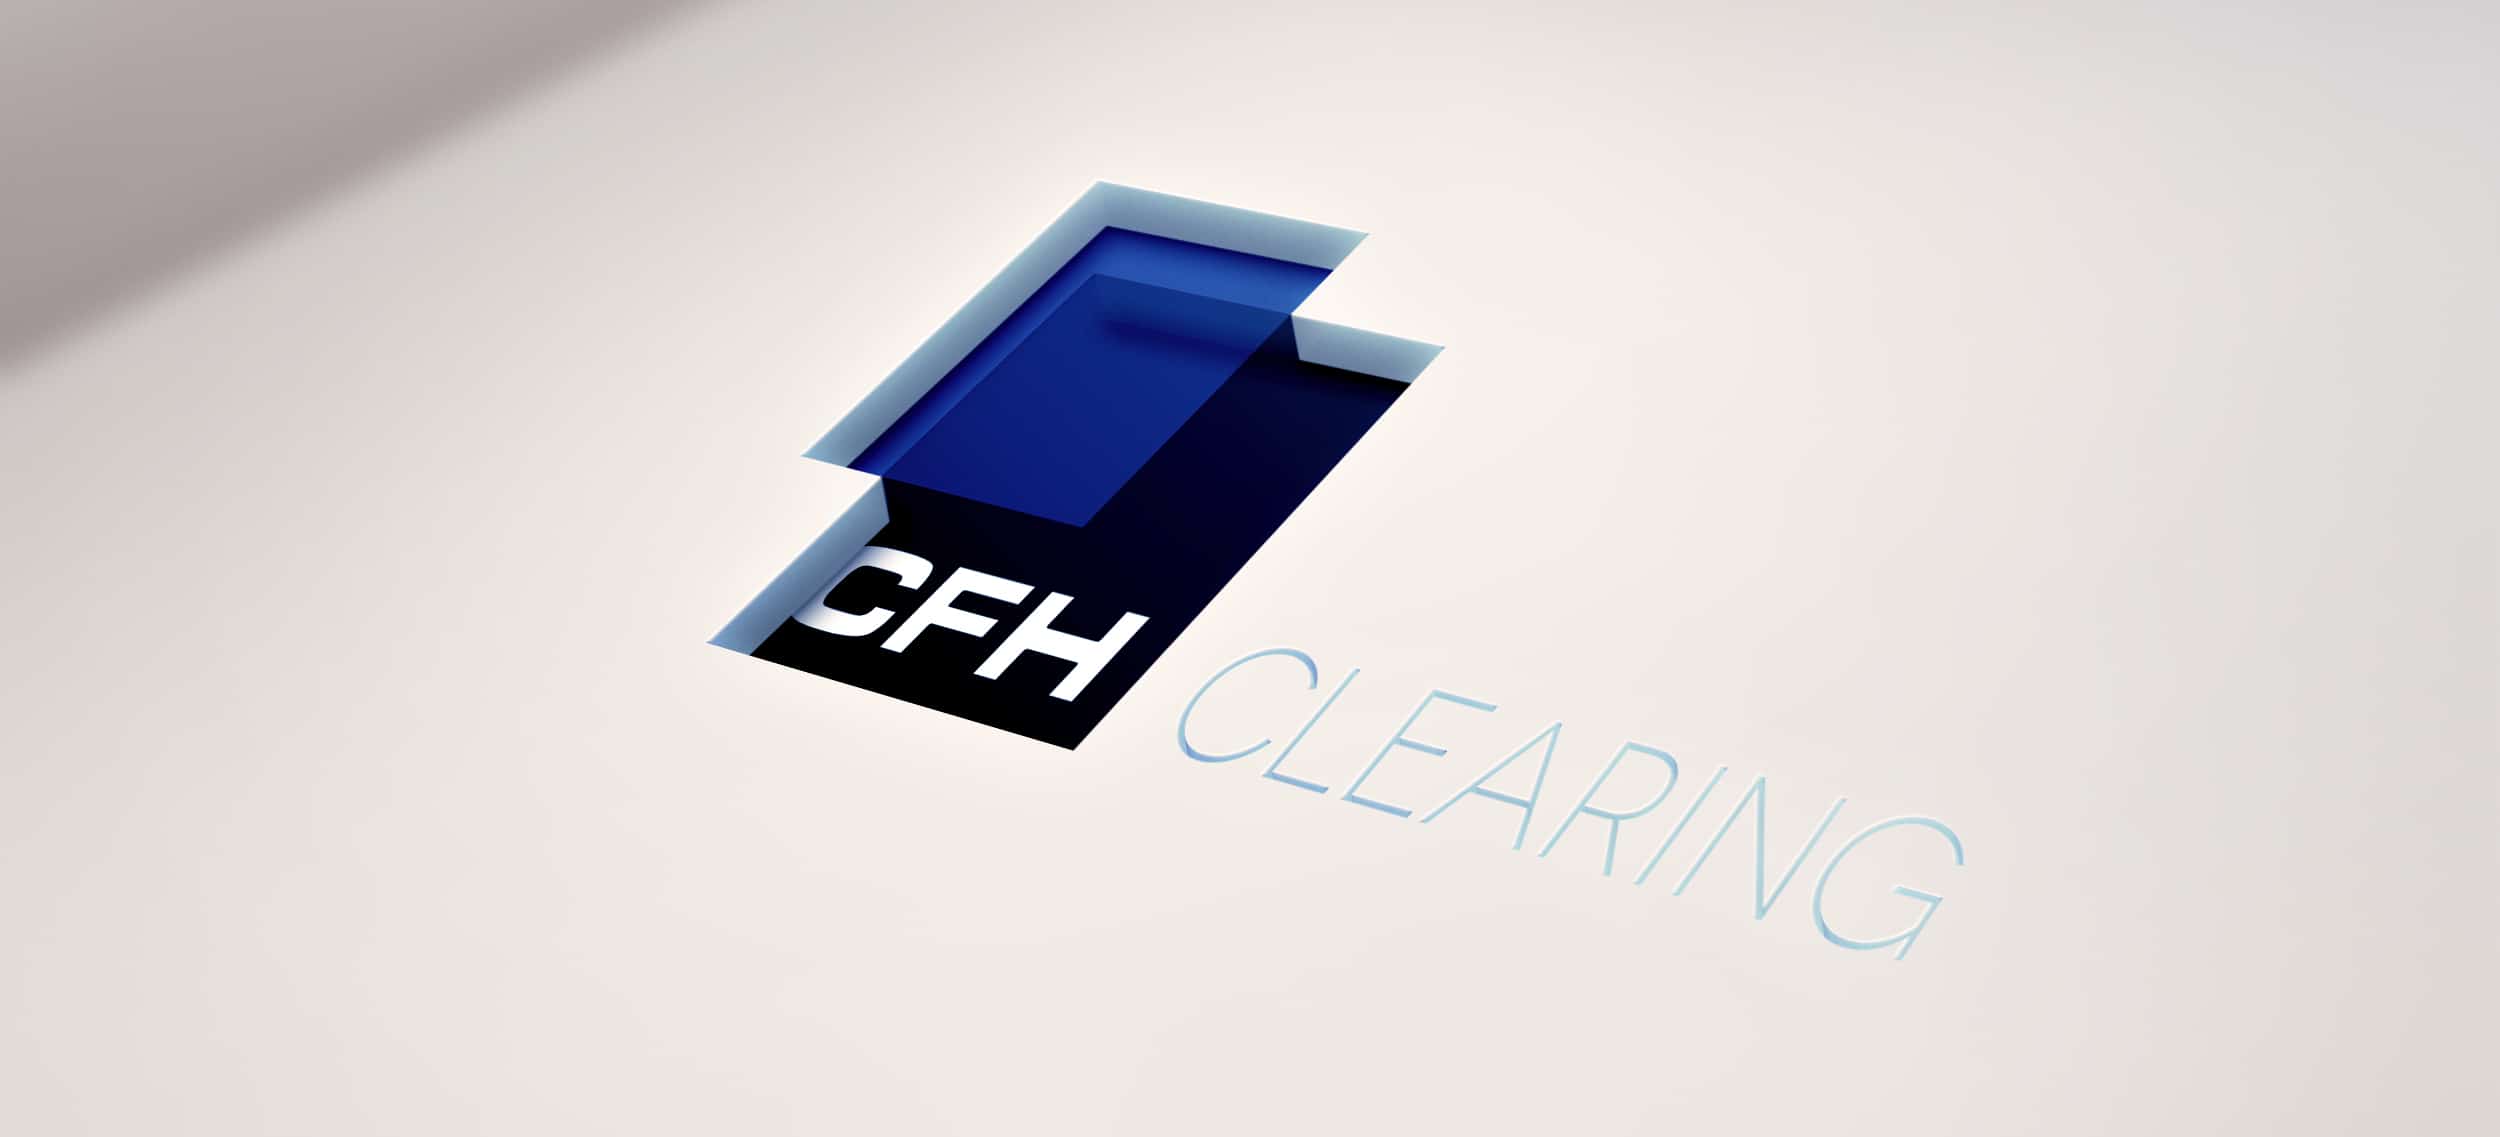 CFH_Clearing_Cutout Logo